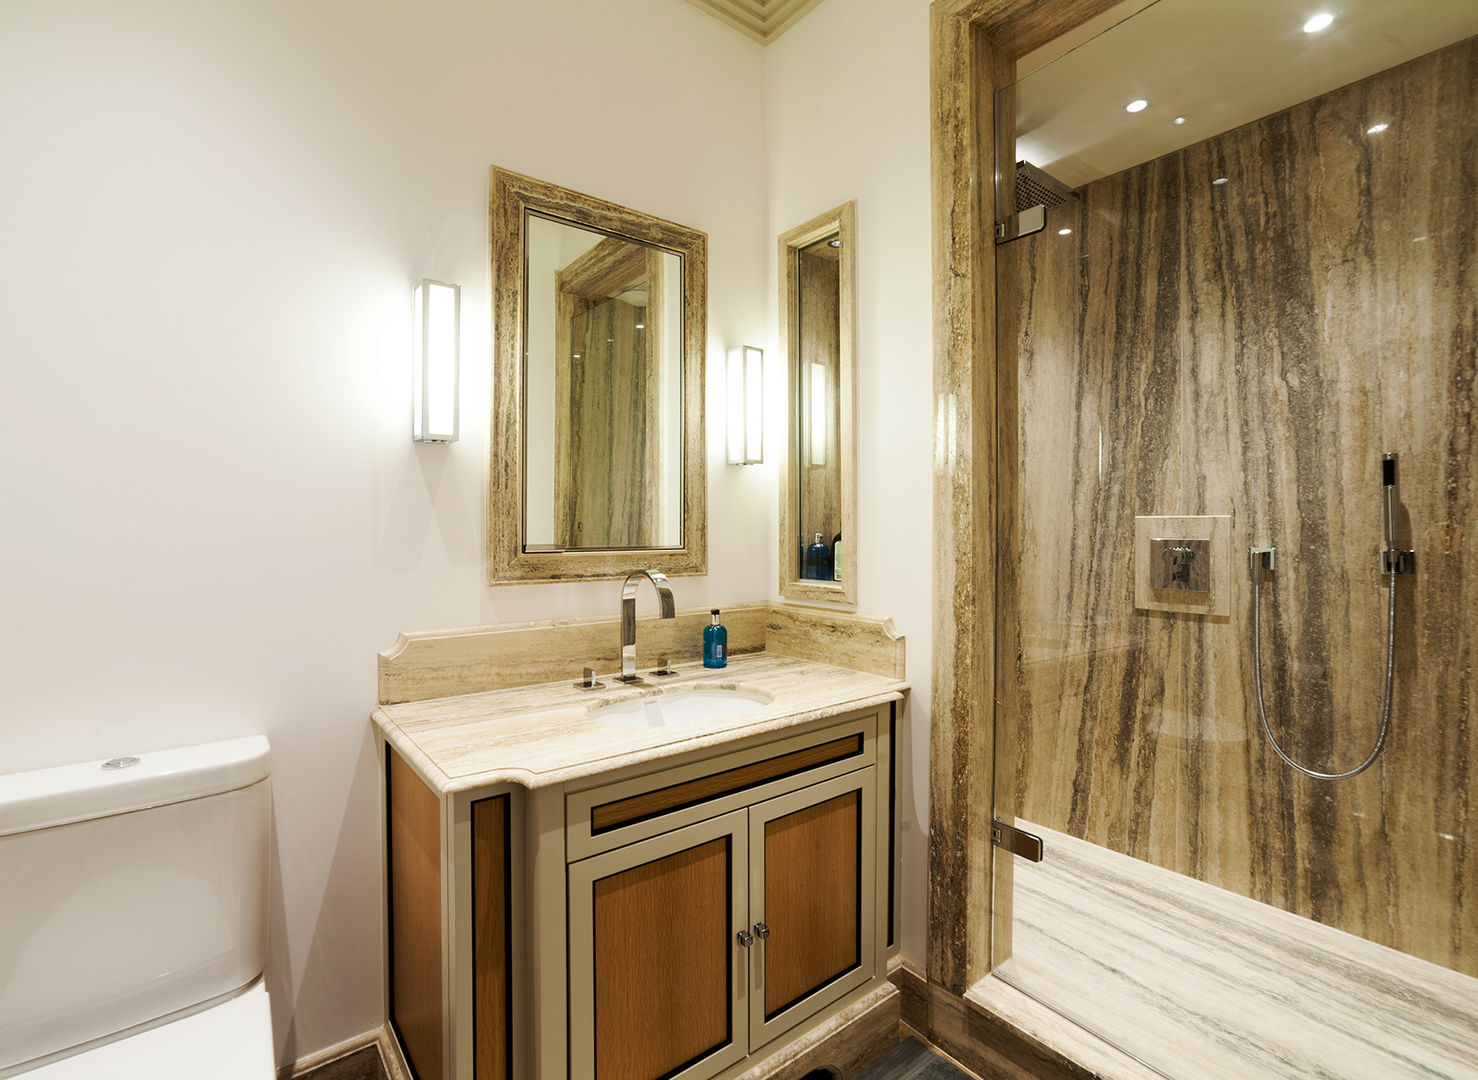 Bathroom Prestige Architects By Marco Braghiroli Banheiros modernos bathroom,modern,lighting